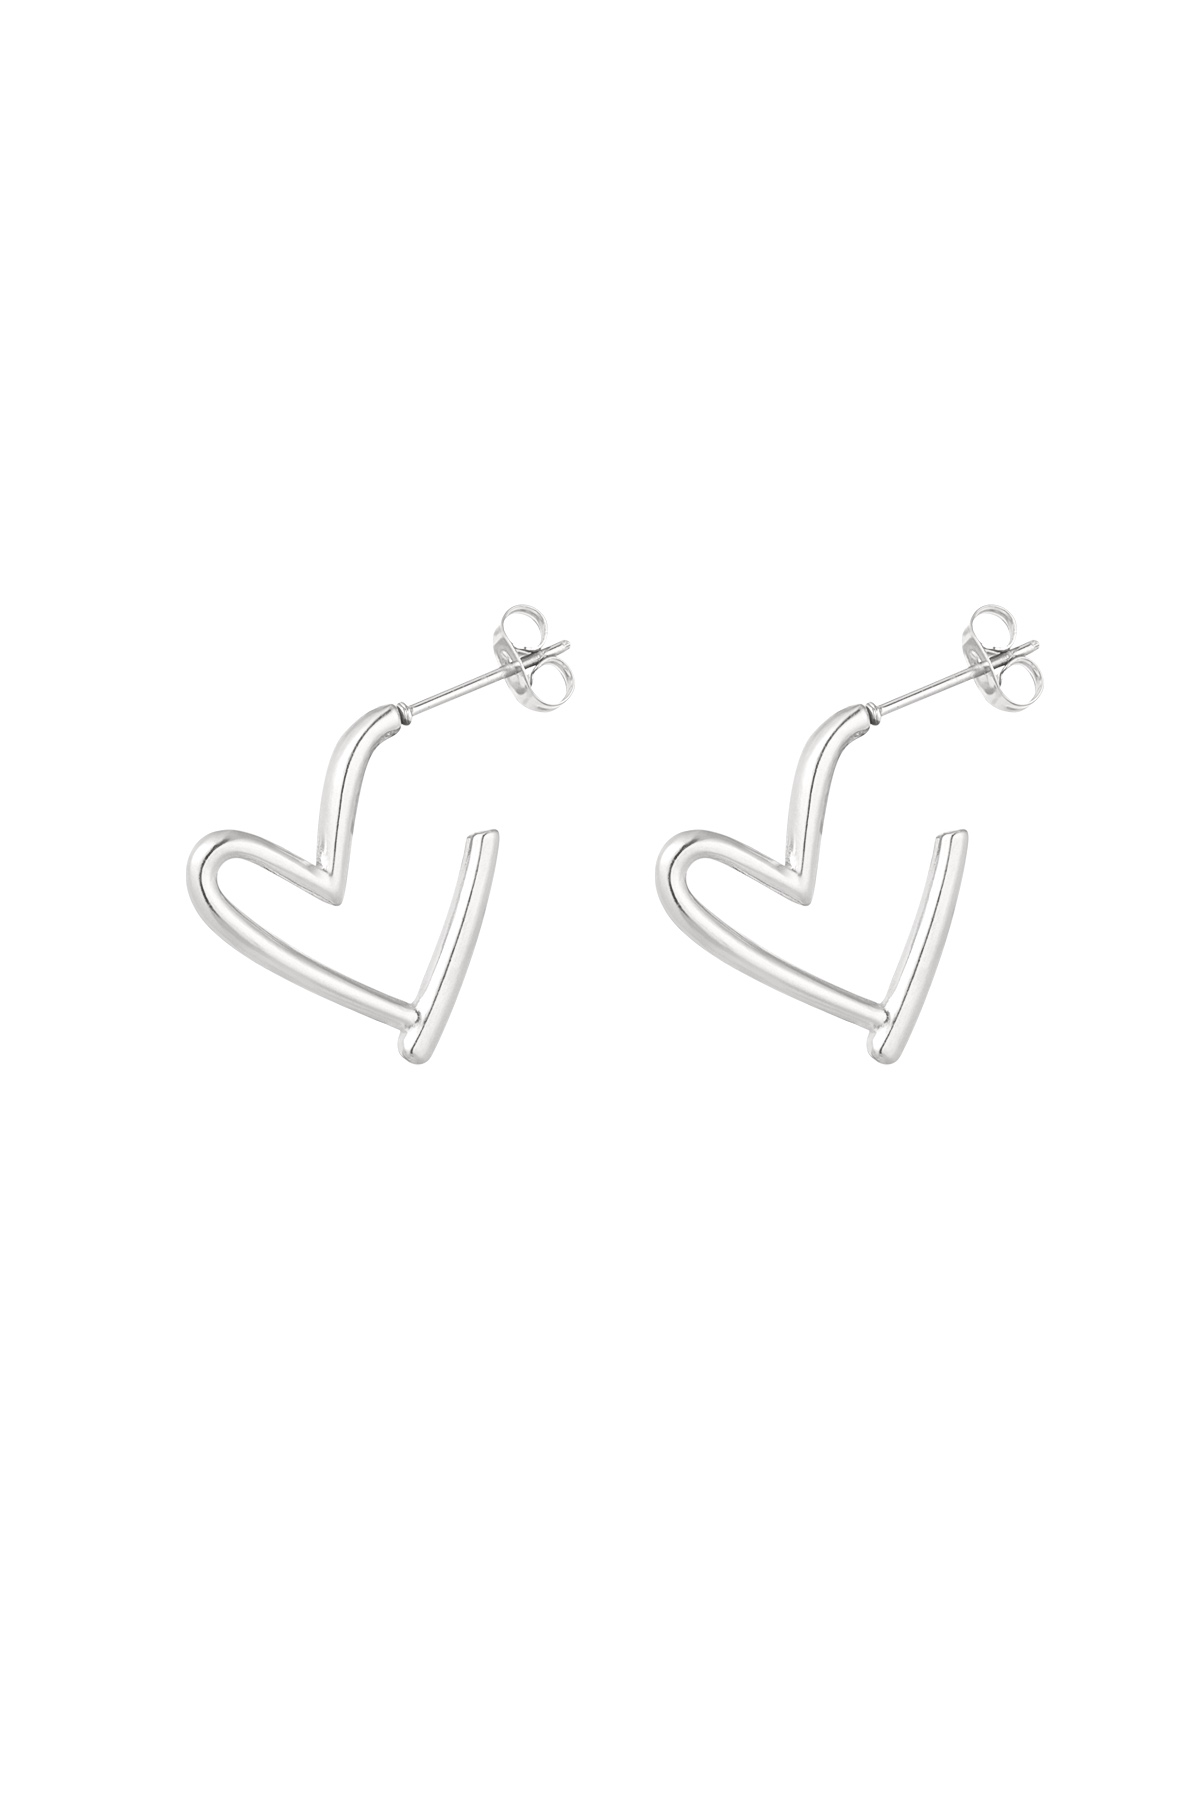 Earrings fall in love - silver h5 